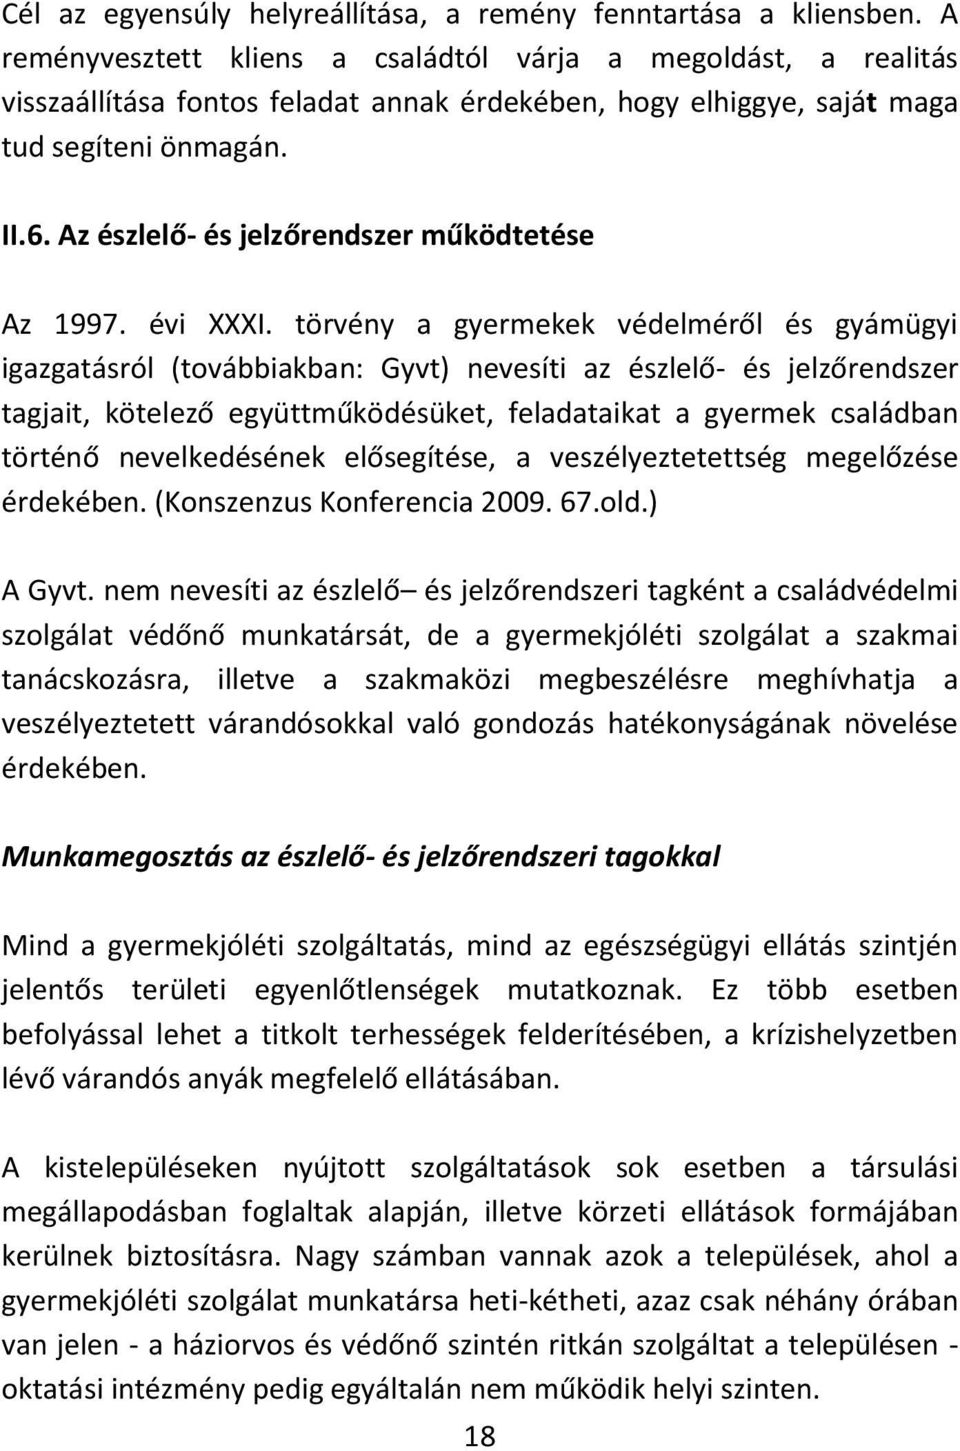 Az észlelő- és jelzőrendszer működtetése Az 1997. évi XXXI.